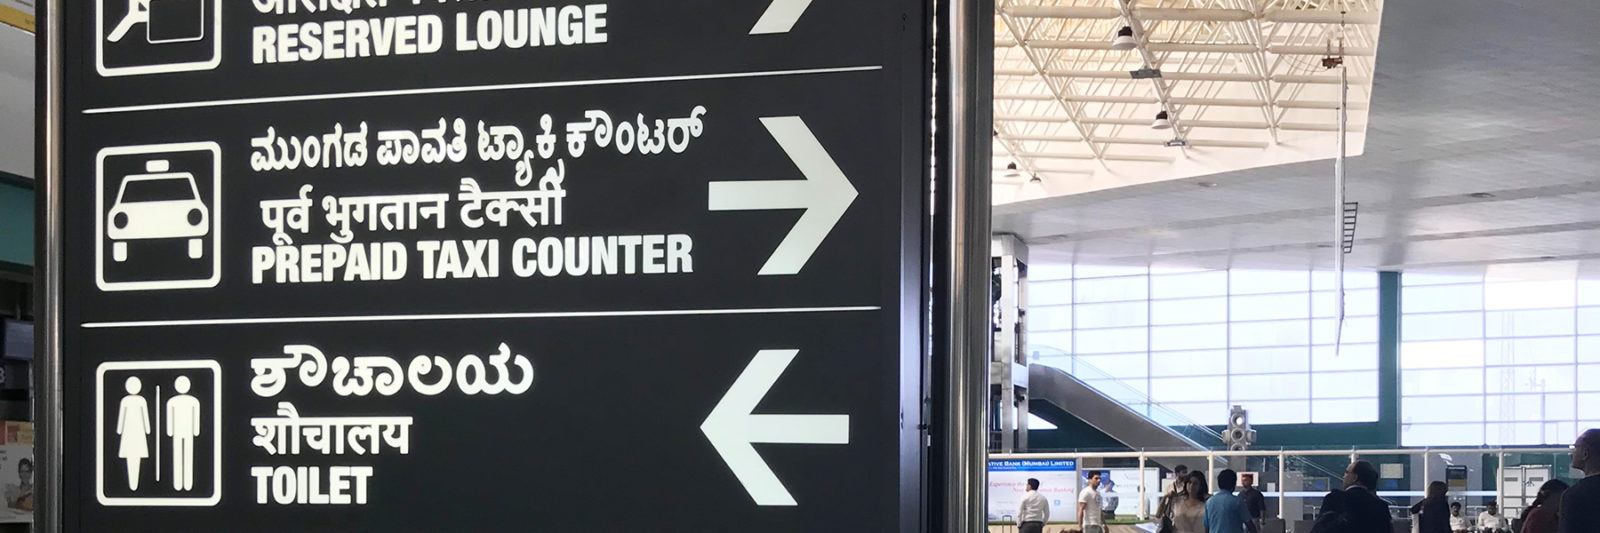 マンガロール空港のプリペイドタクシーカウンターへの案内